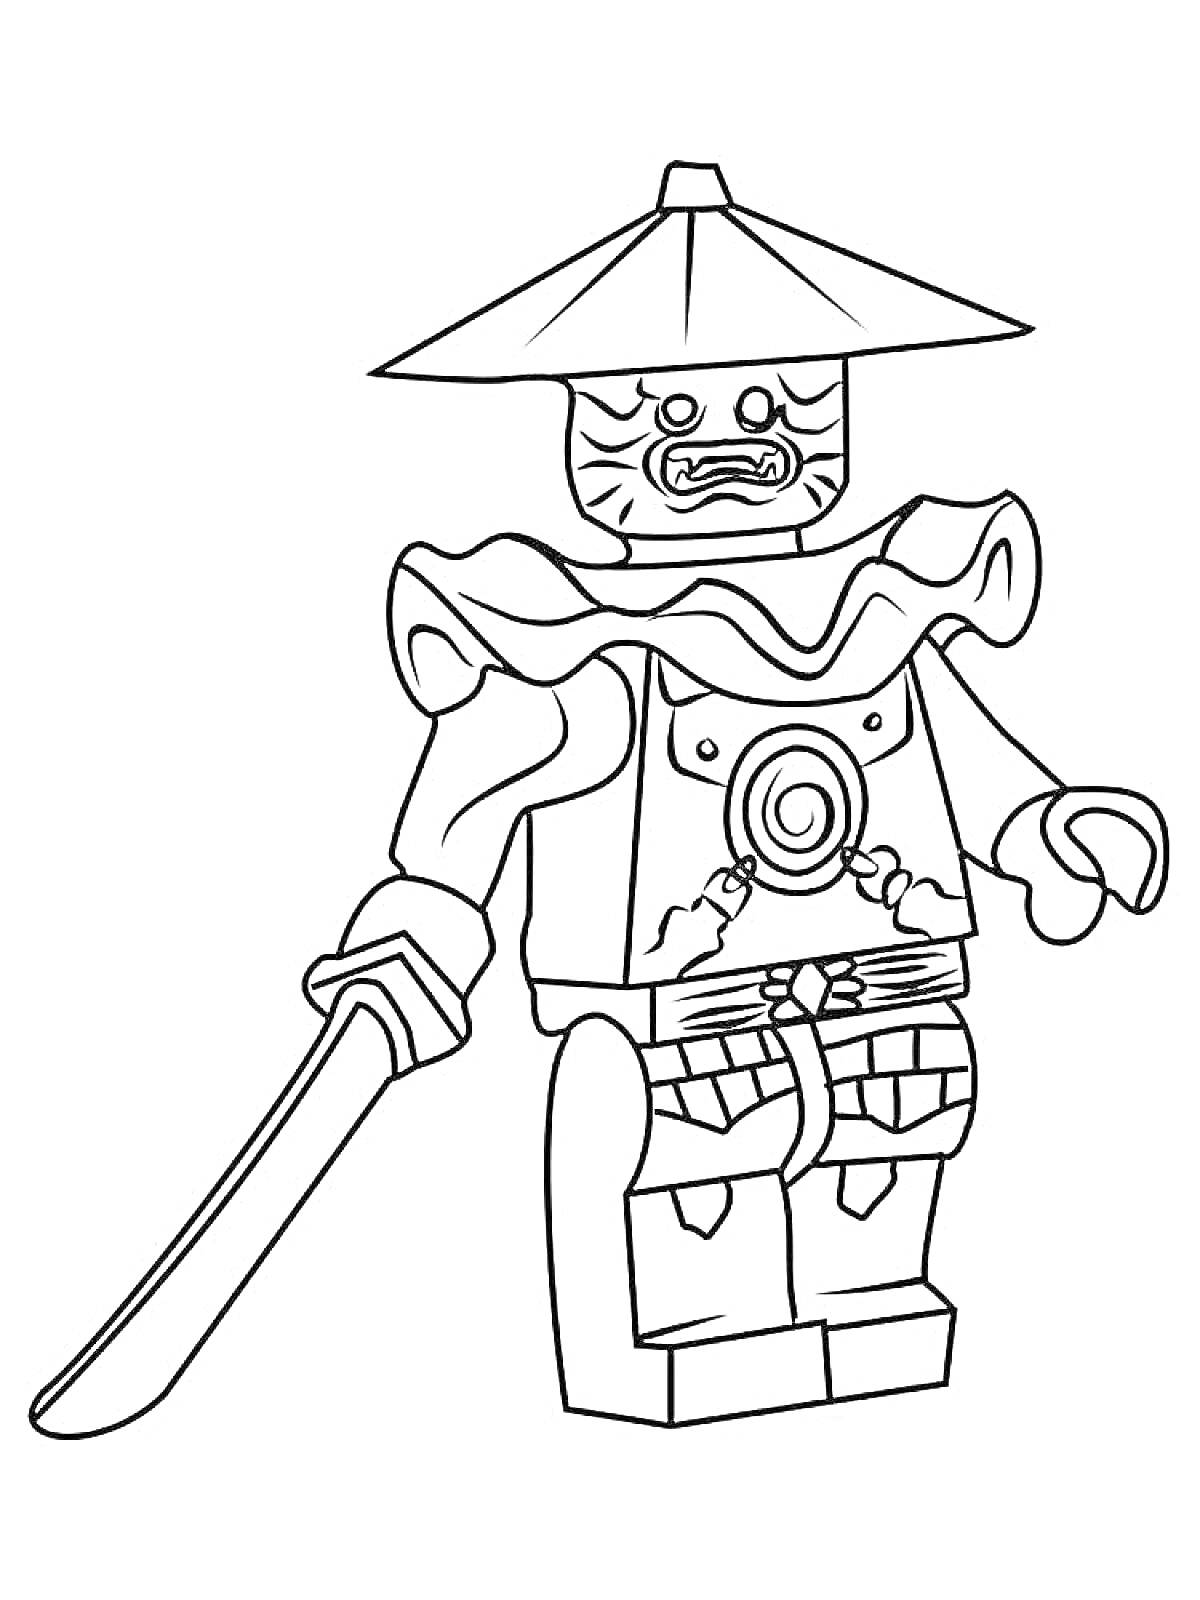 Раскраска Лего фигурка ниндзя с шляпой и мечом